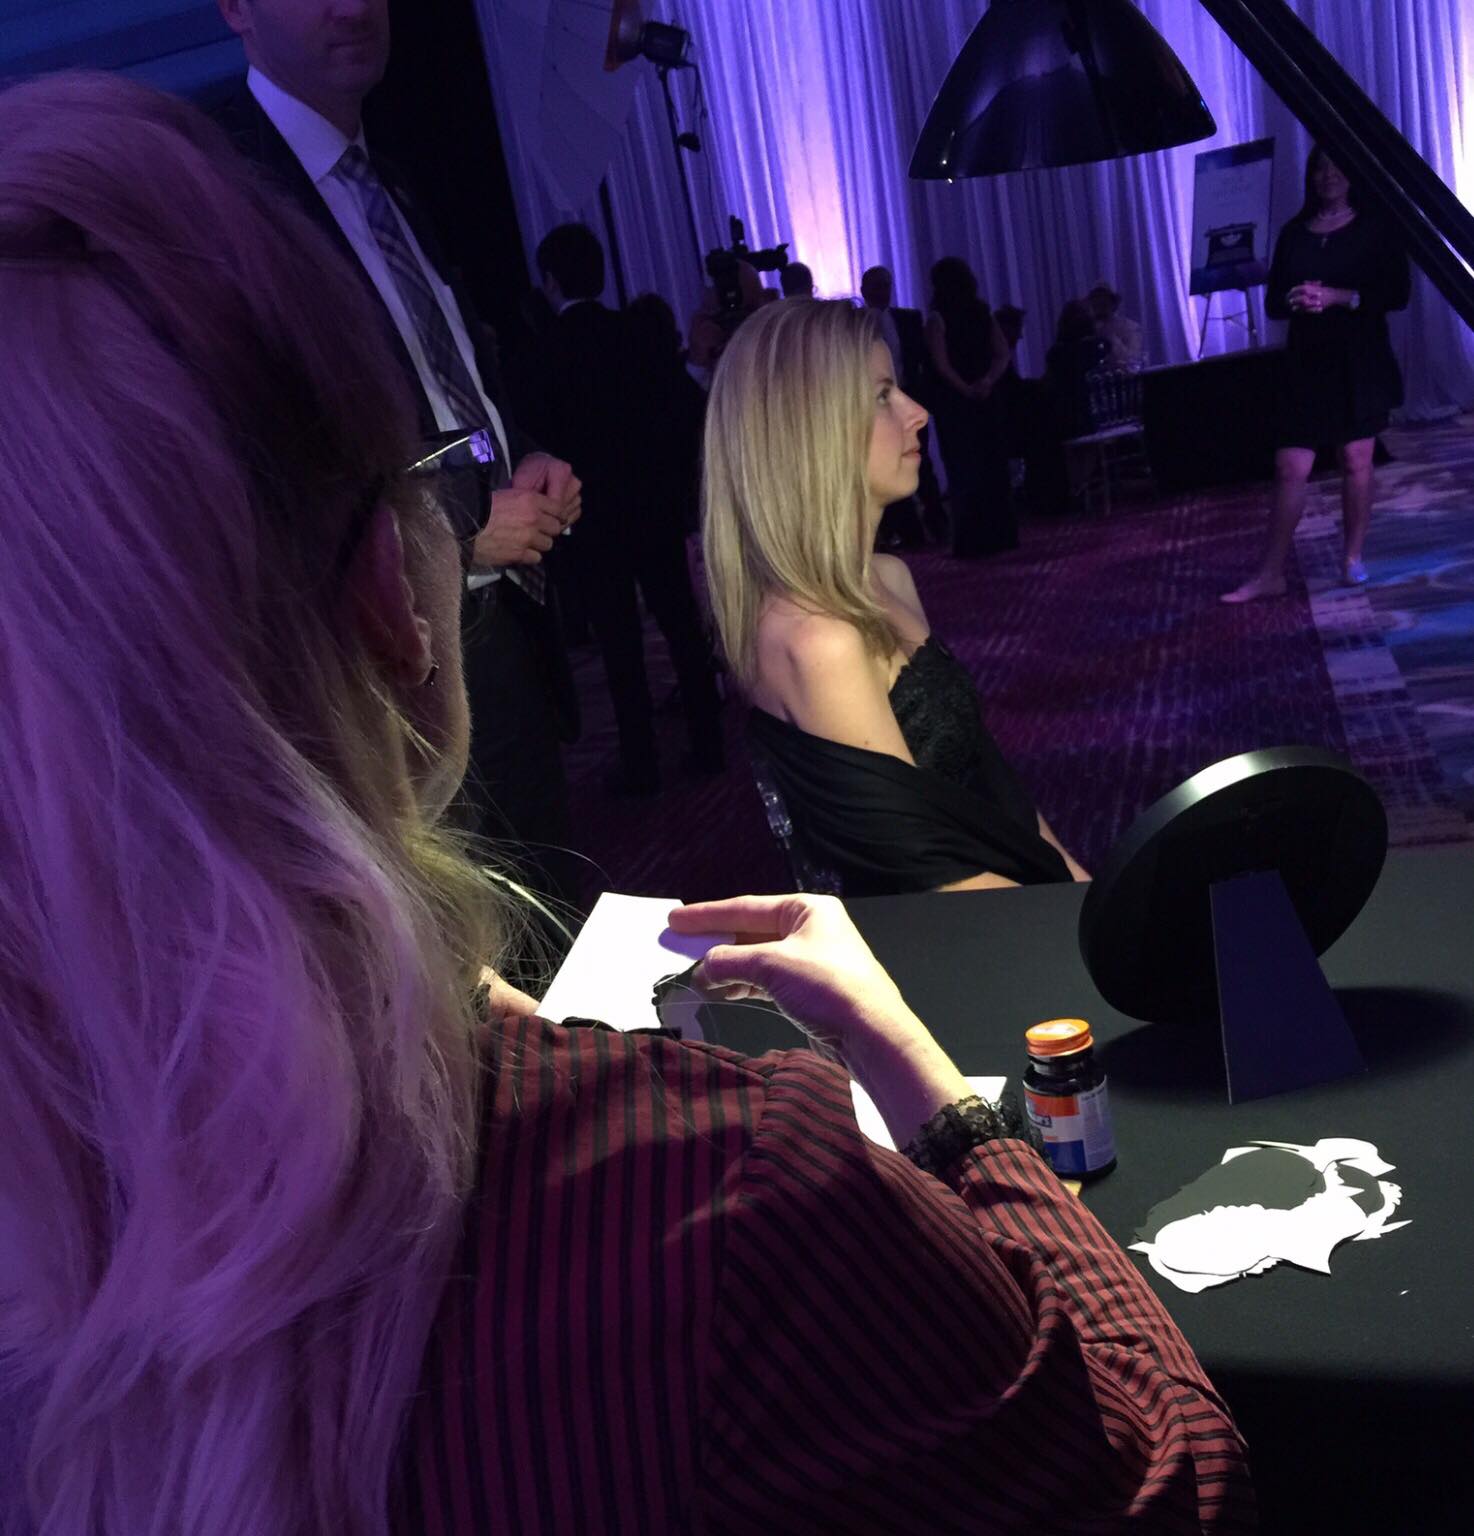 Kathryn Flocken cutting a silhouette at an event